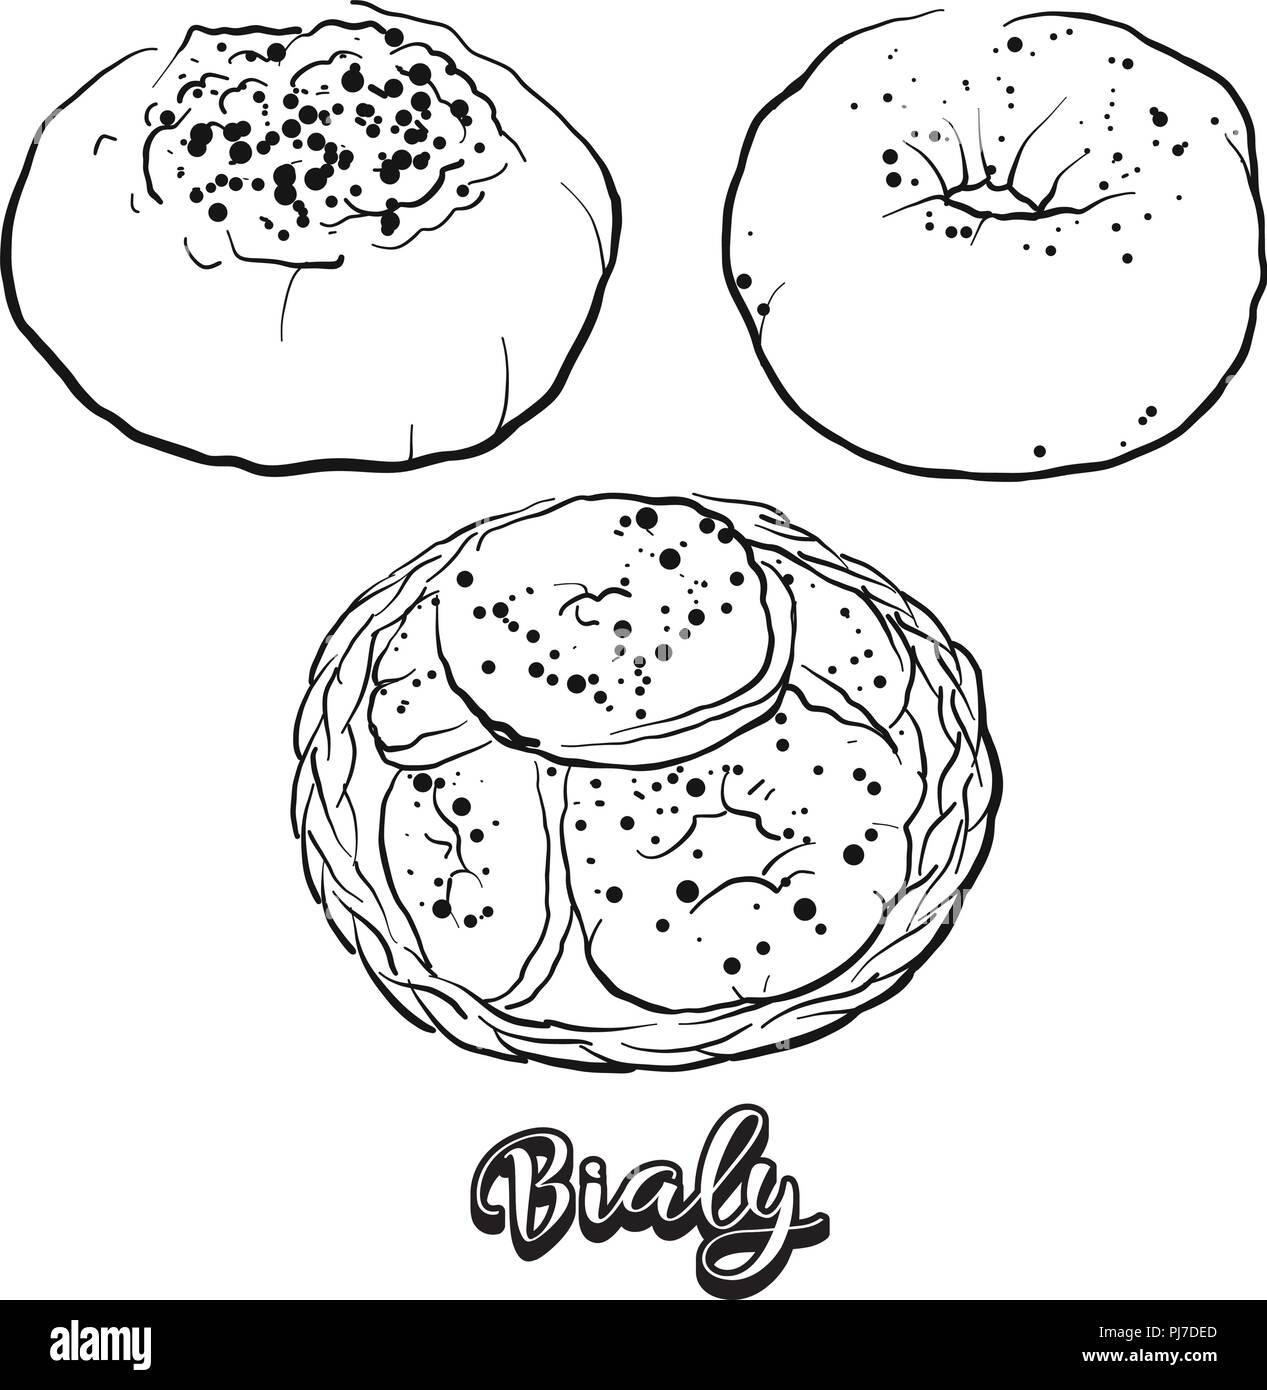 Hand gezeichnete Skizze von Bialy Brot. Vektor Zeichnung von Hefe Brot essen, in der Regel in Mitteleuropa bekannt. Brot Abbildung Serie. Stock Vektor